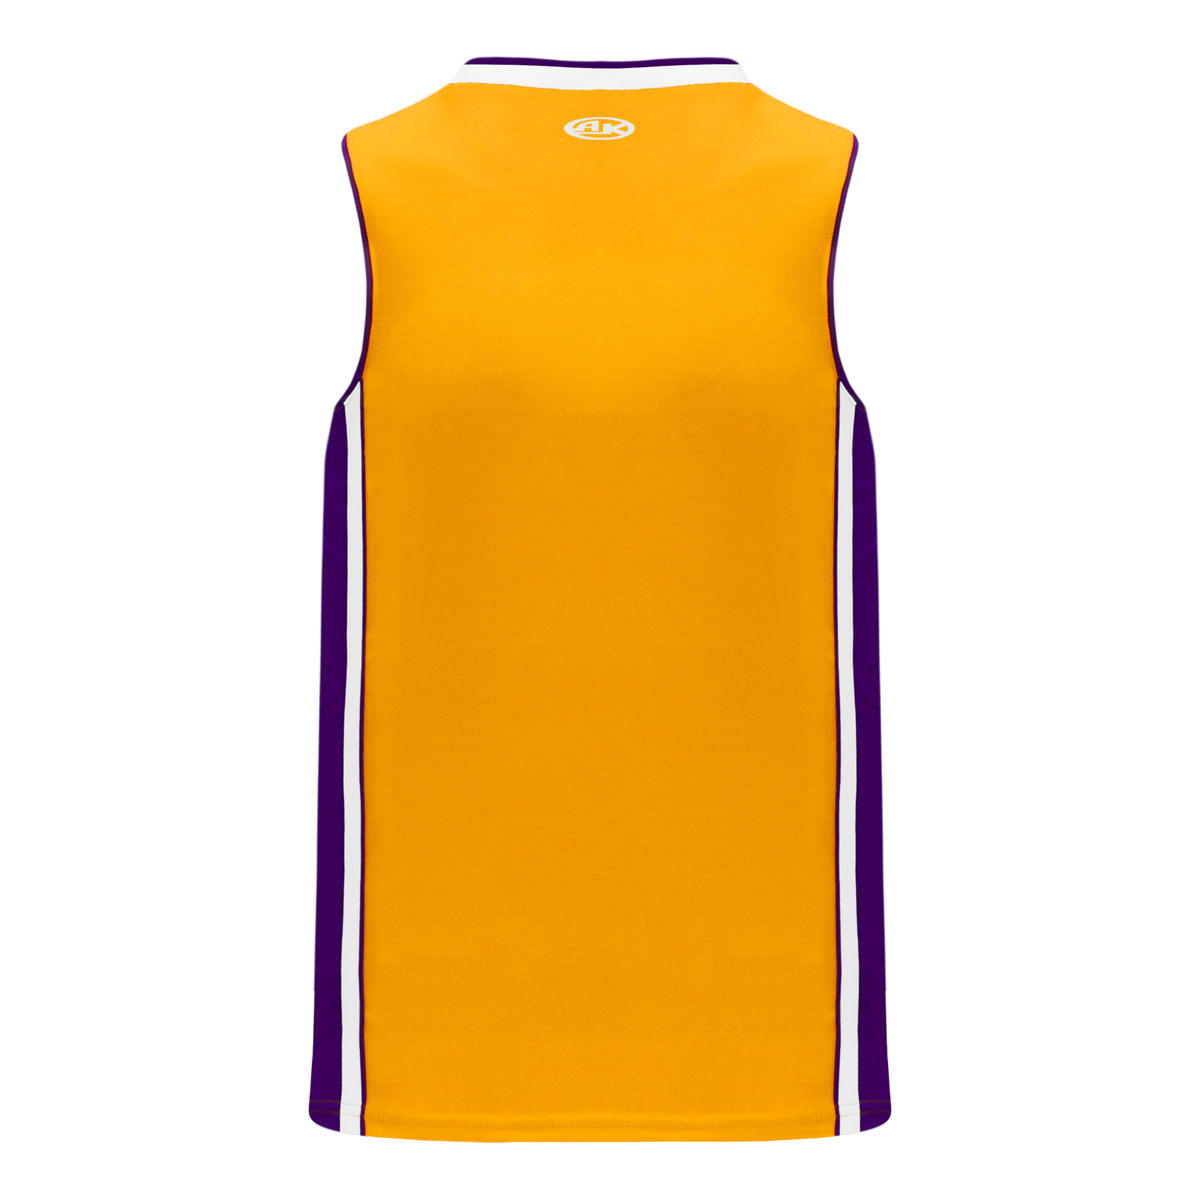 Athletic Knit (AK) B1710A-441 Adult La Lakers Purple Pro Basketball Jersey Medium